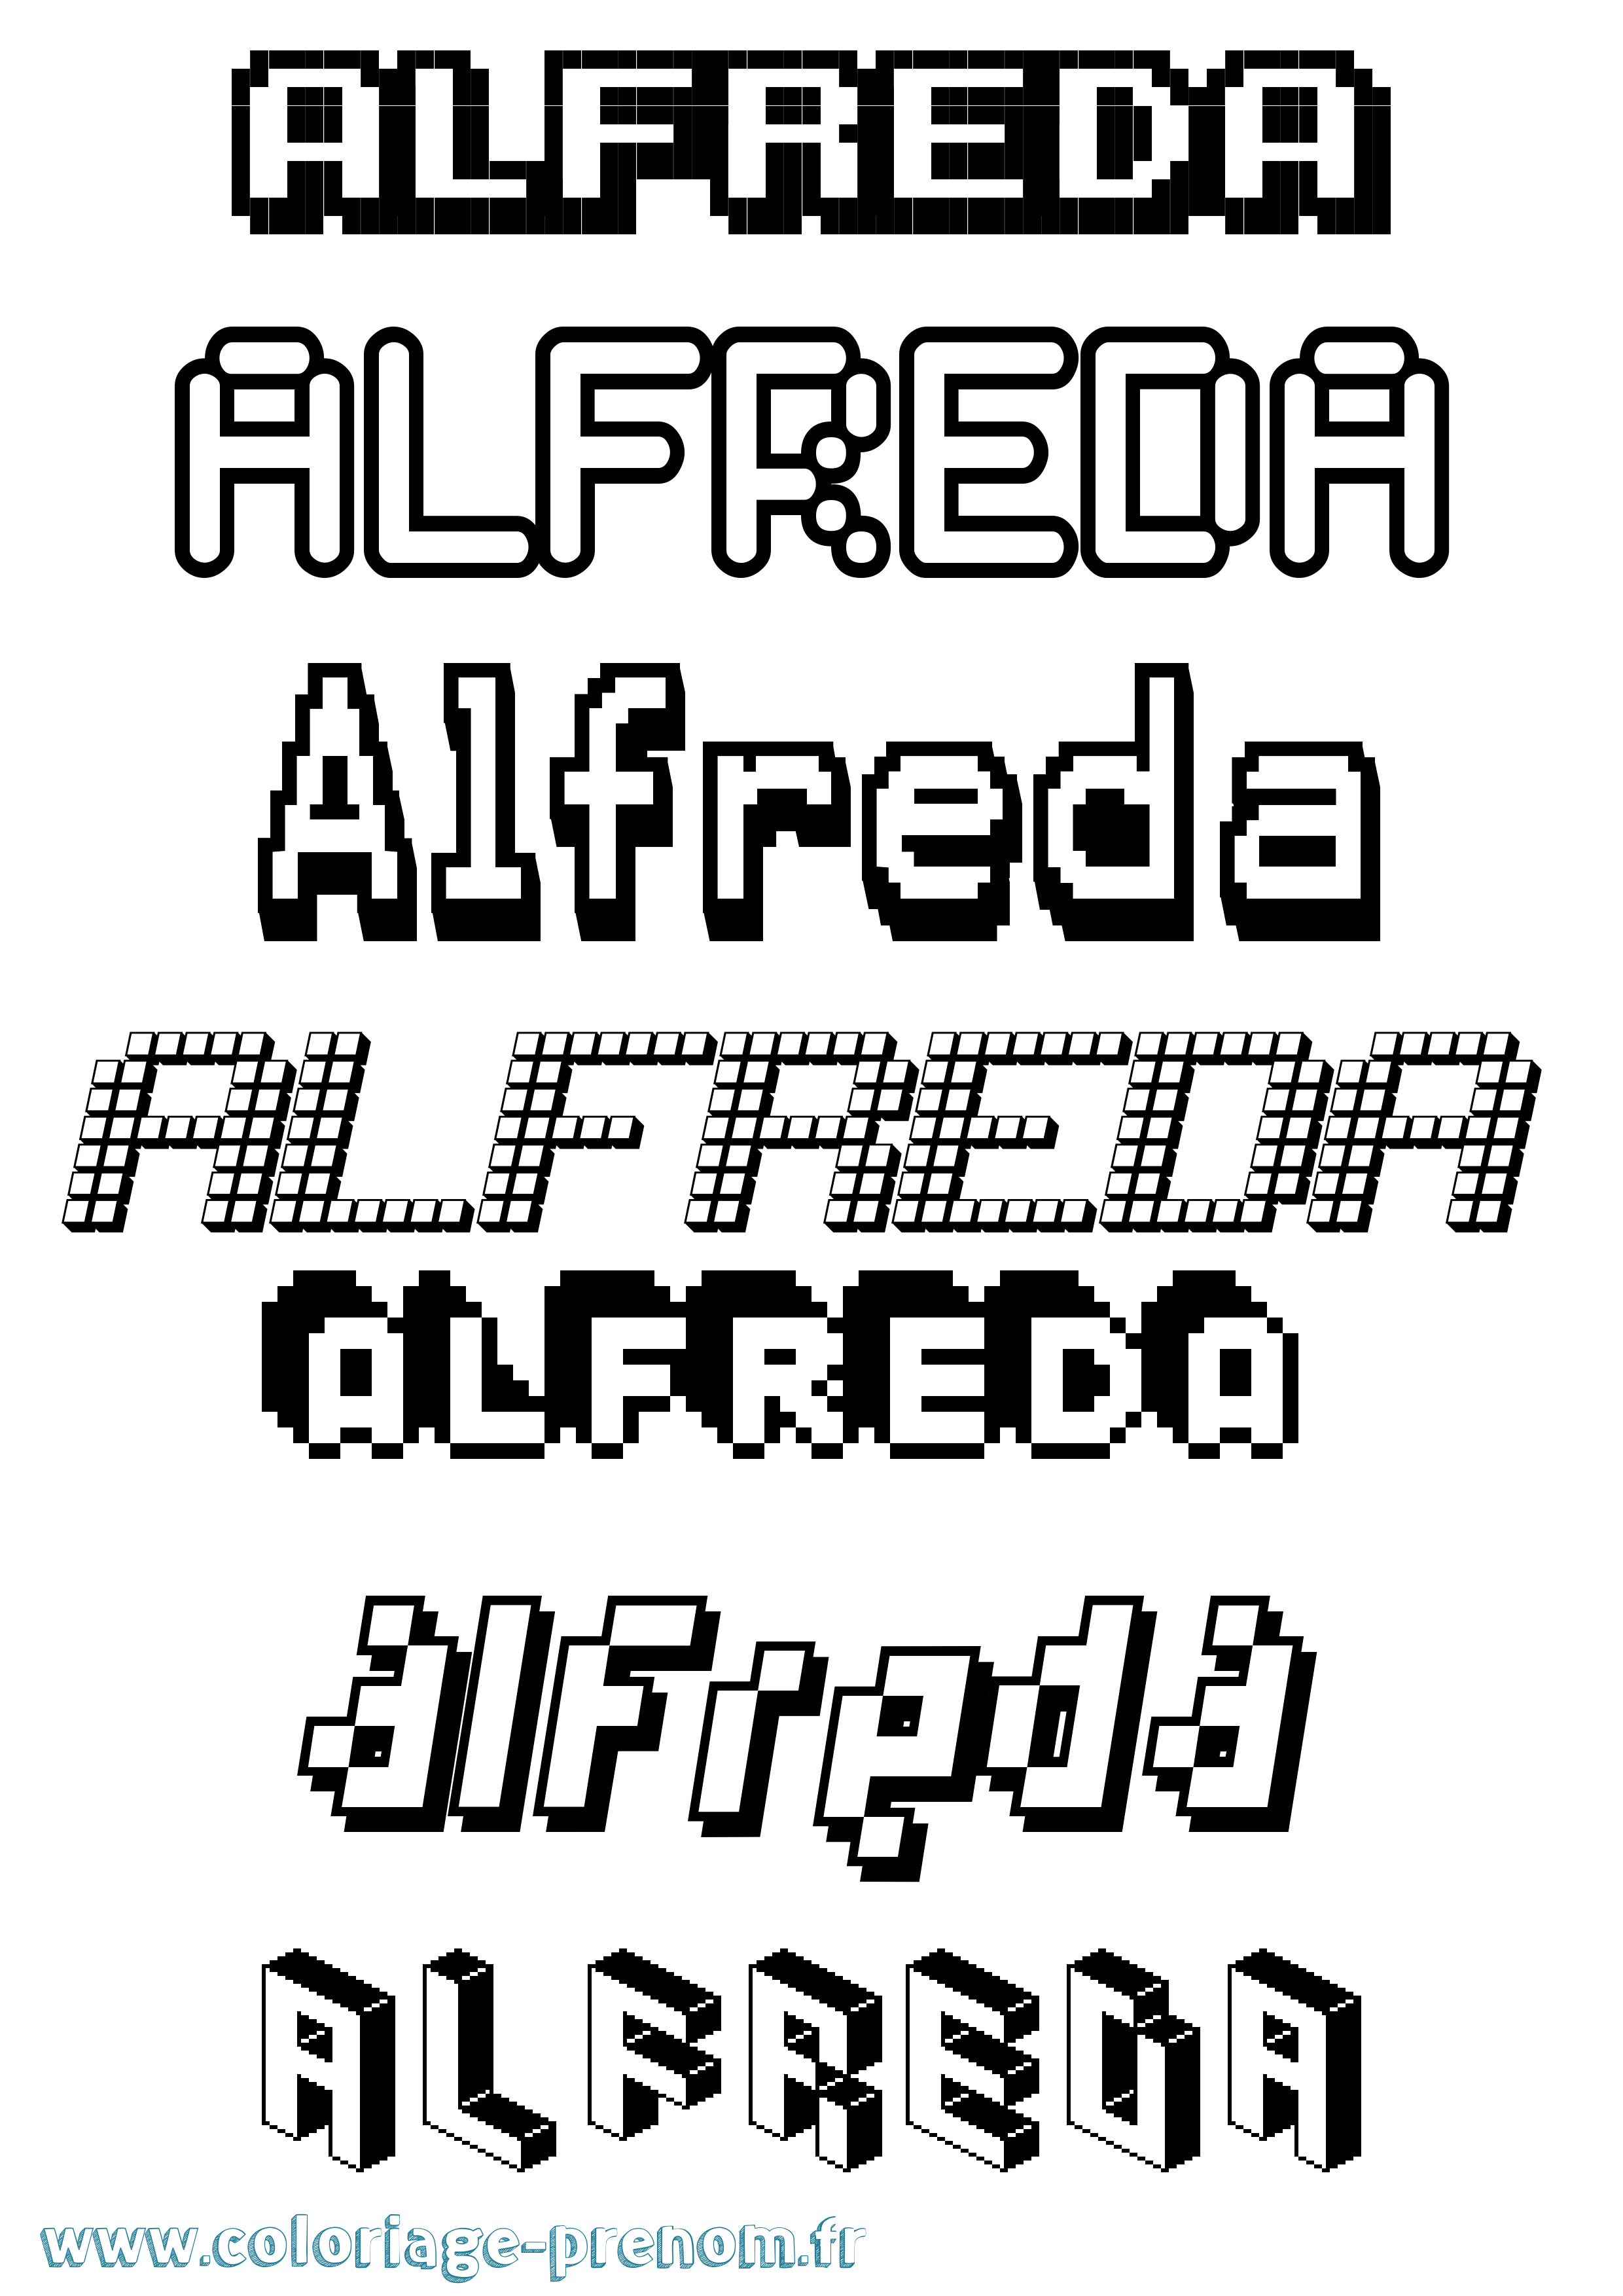 Coloriage prénom Alfreda Pixel